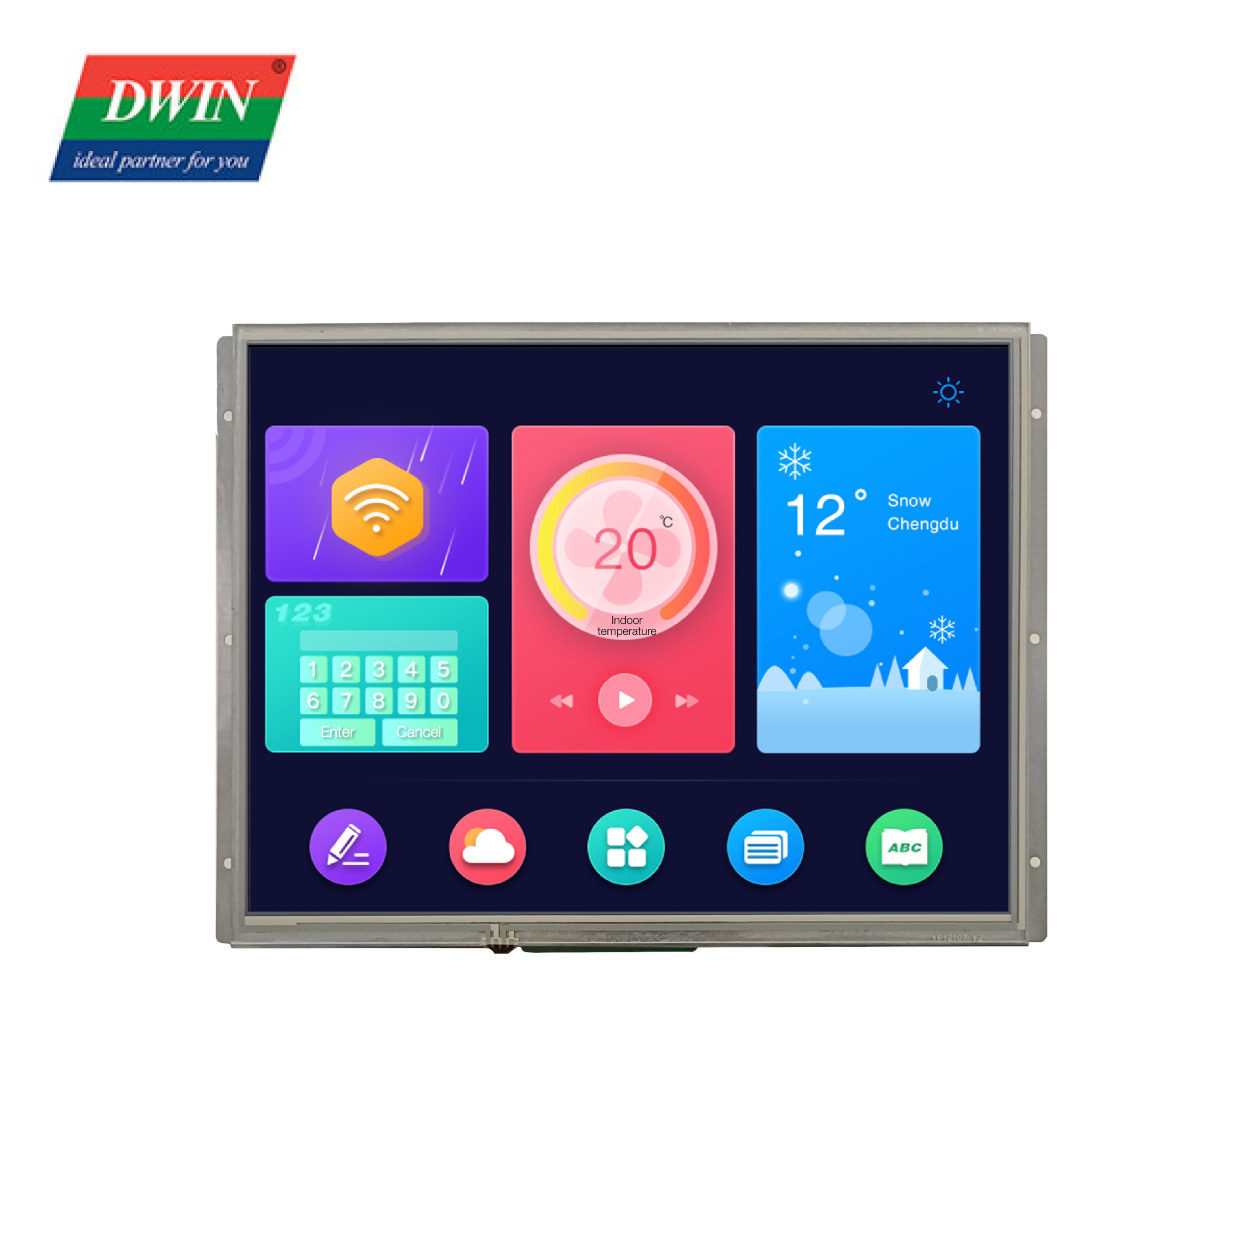 Modèle d'écran LCD HMI 12,1 pouces : DMG80600Y121_02NR (qualité beauté)